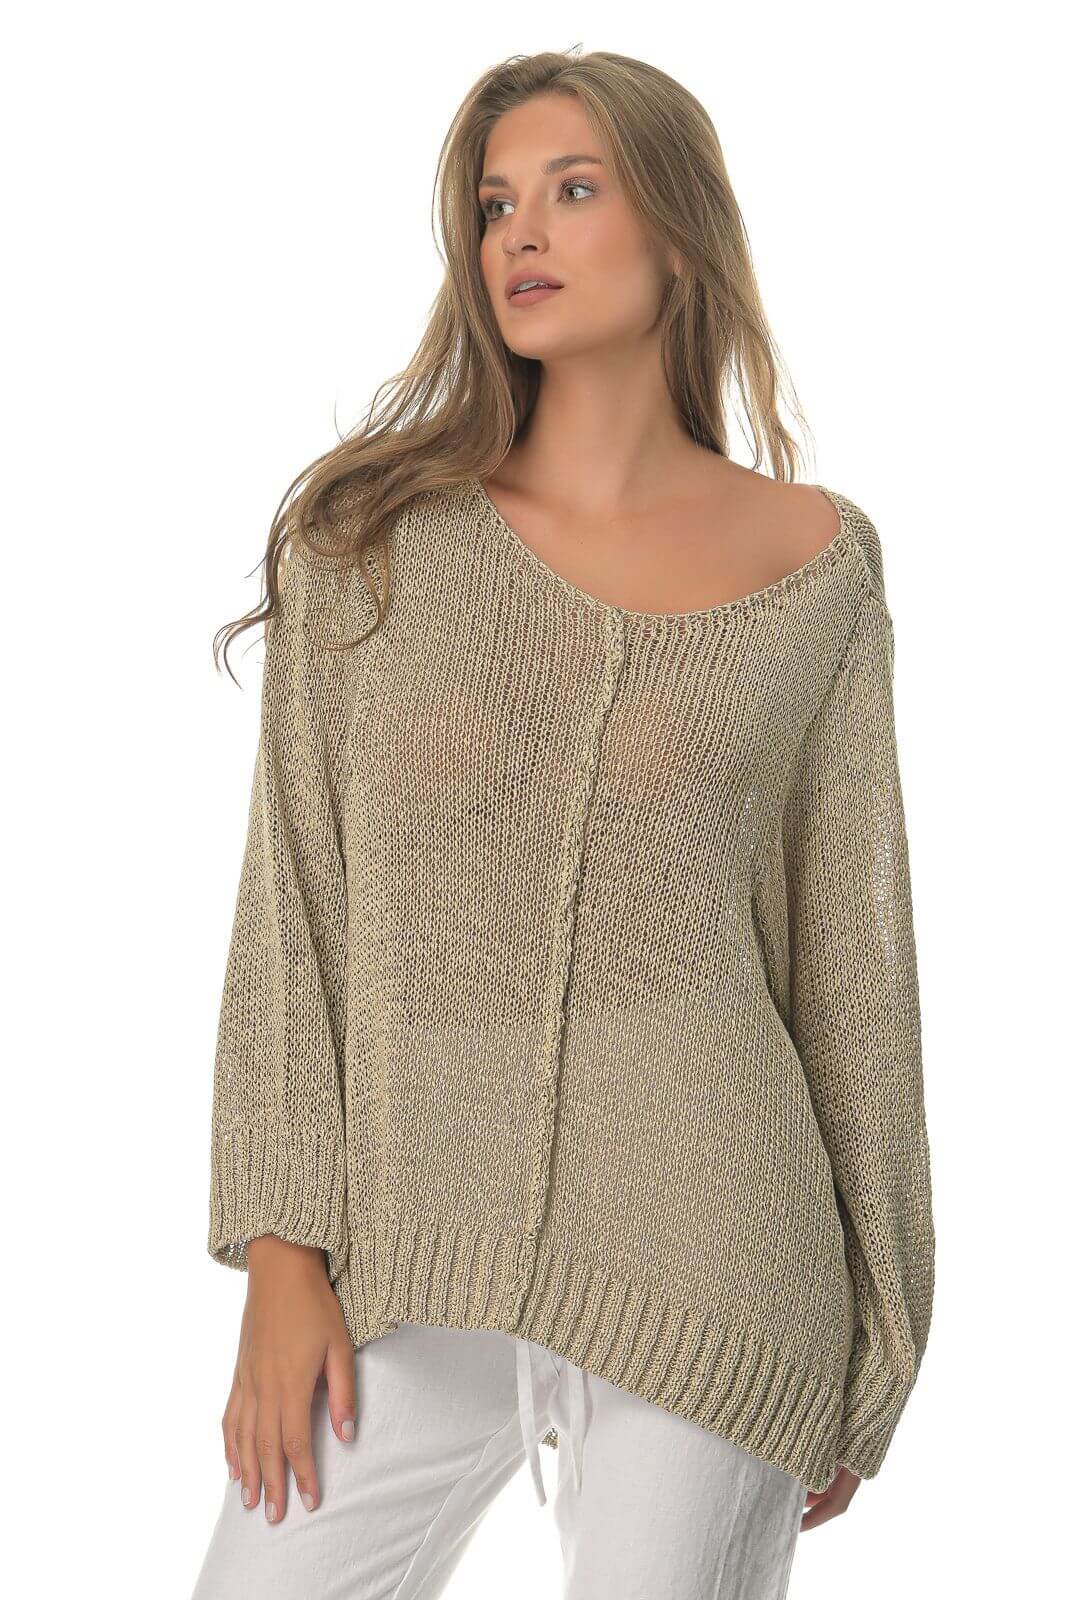 Μπλούζα Γυναικεία Sweater Μπεζ-My Boutique